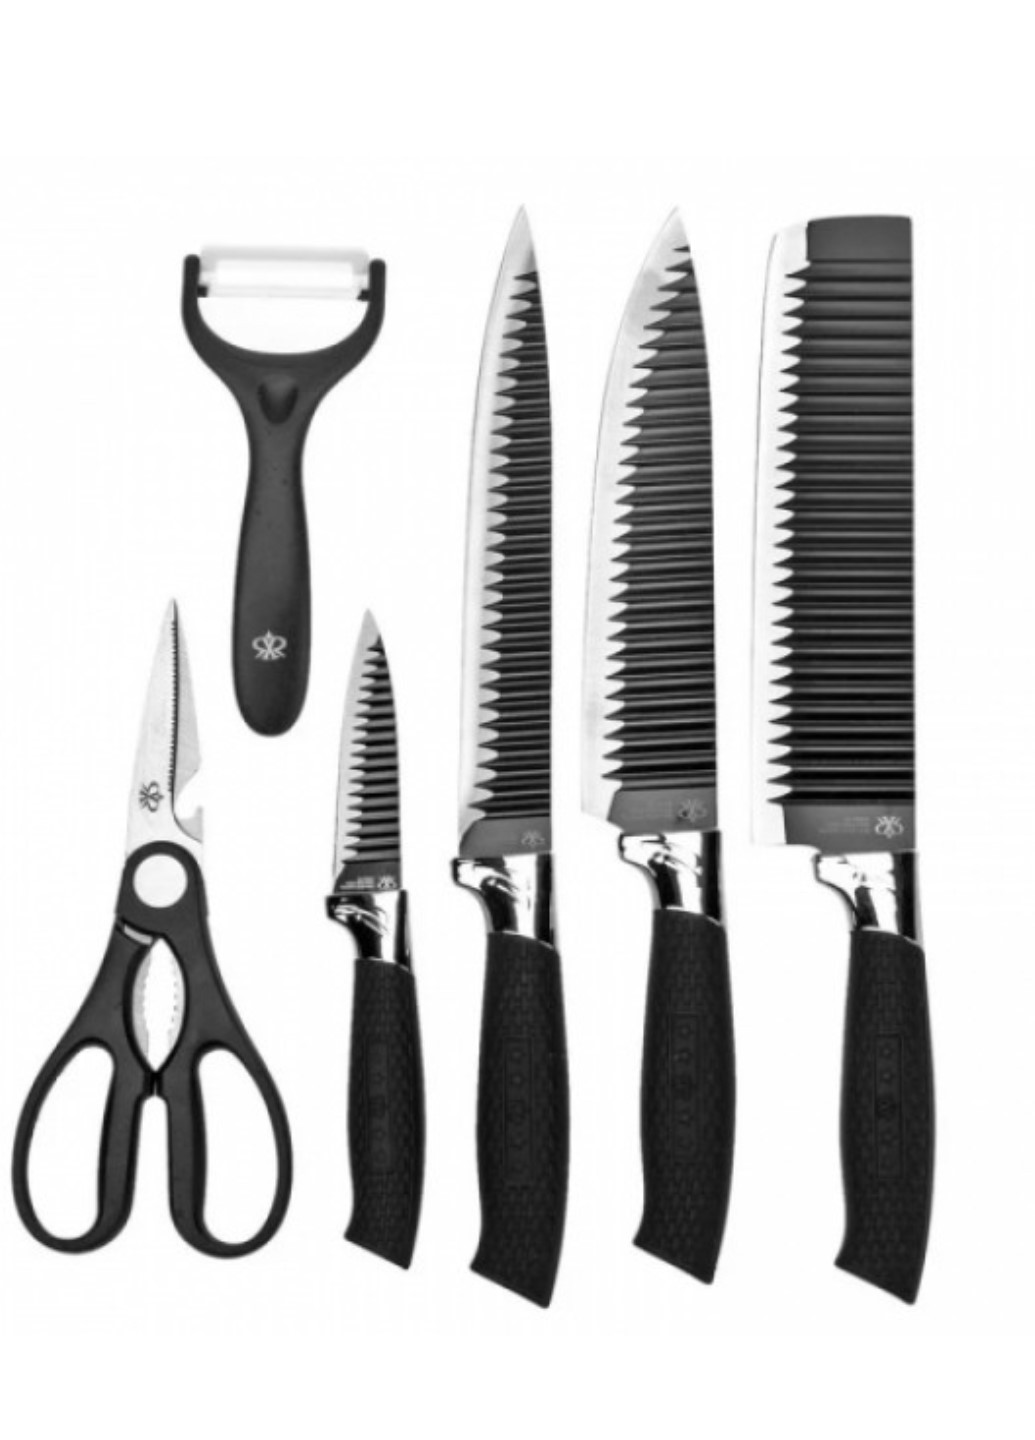 Набор кухонных ножей из стали 6 предметов King-B0011 Genuine чёрные, пластик, нержавеющая сталь